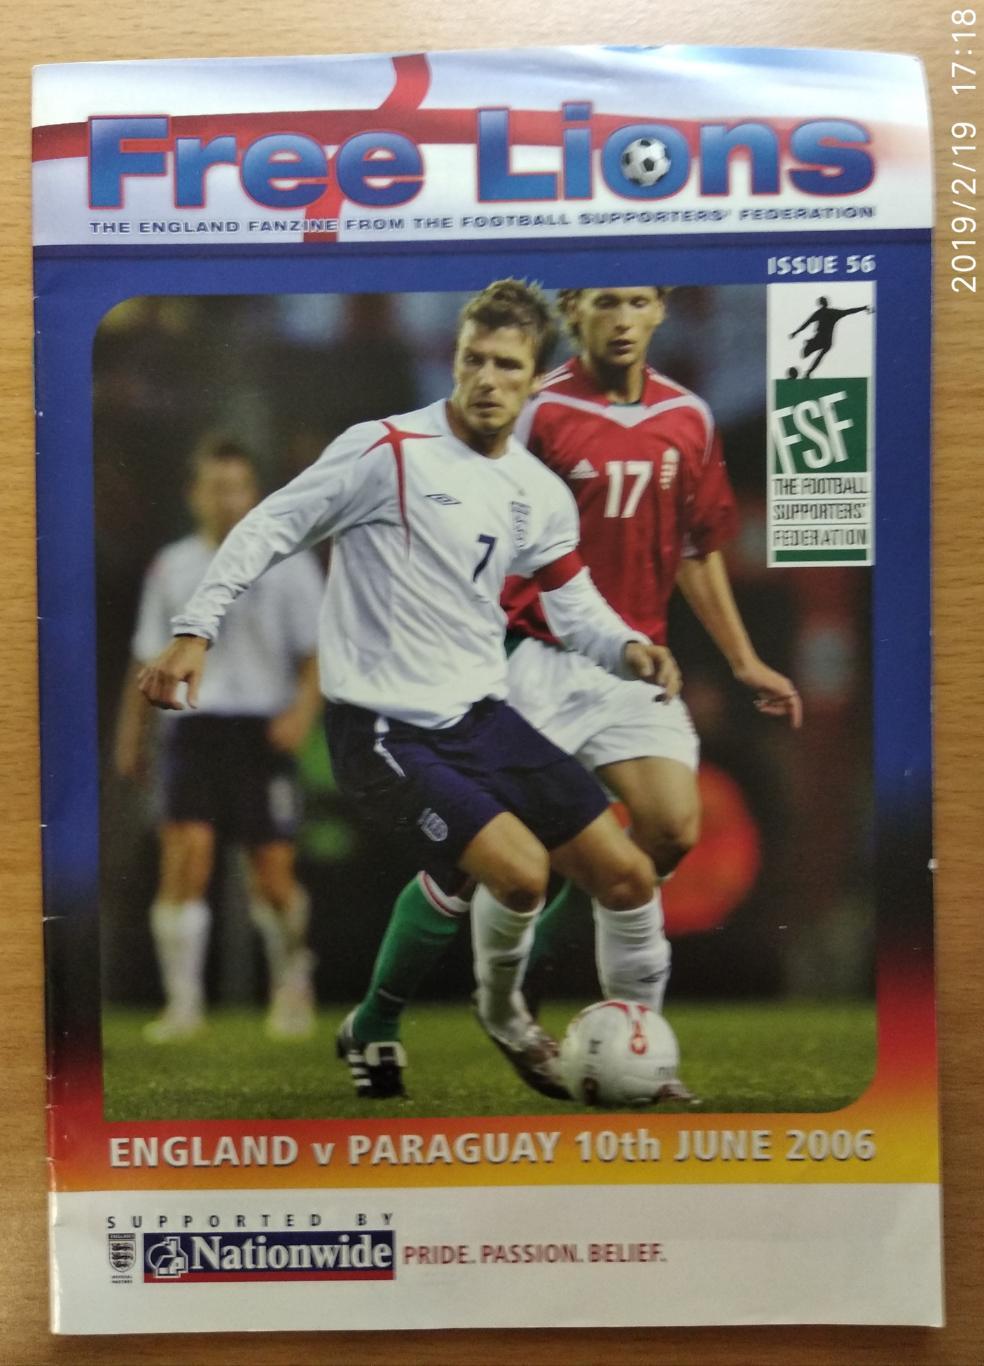 Англия - Парагвай 10.06.2006,Free Lions (Издание федерации болельщиков Англии)